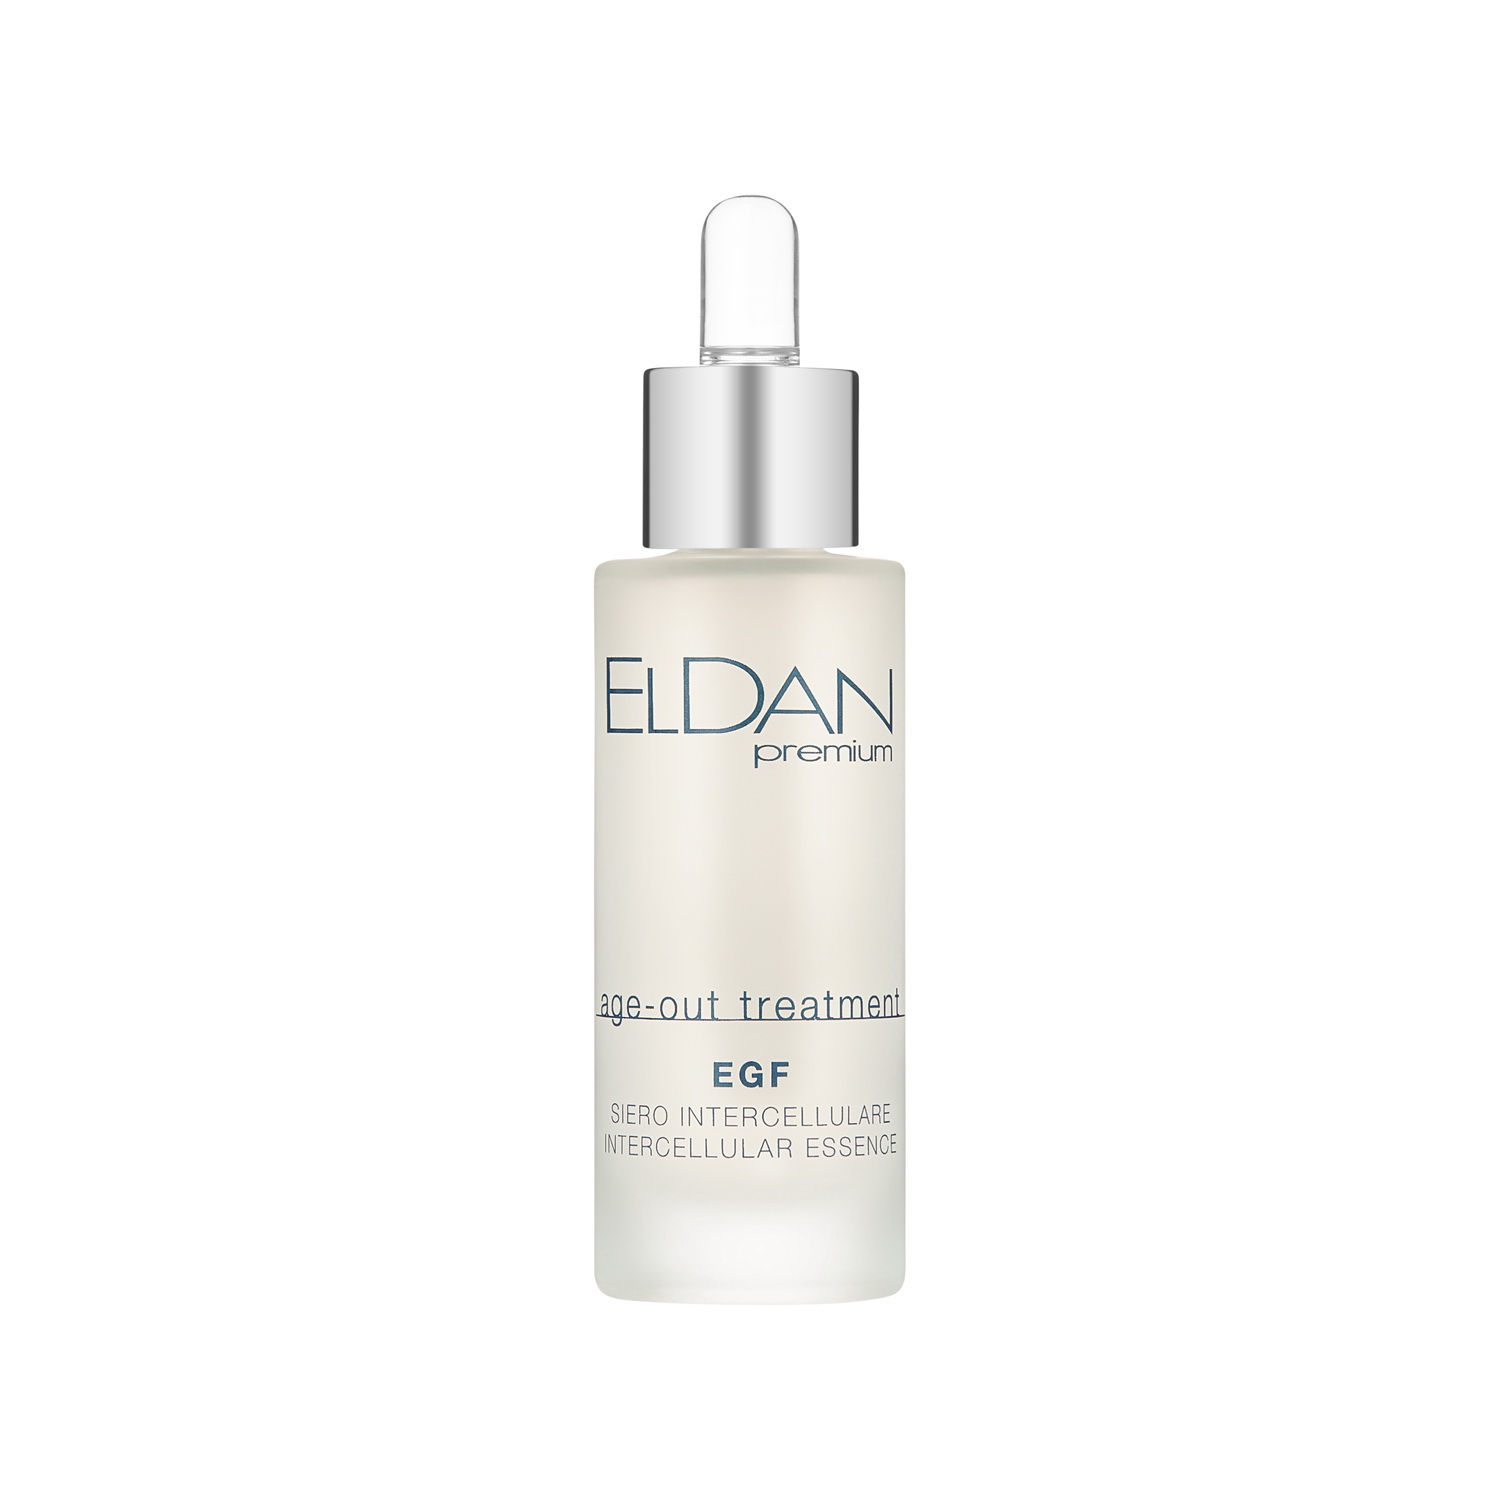 Сыворотка для лица Eldan Cosmetics EGF Intercellular Essence регенерирующая, 30 мл сыворотка для лица l or dnc фруктовые кислоты 15 мл